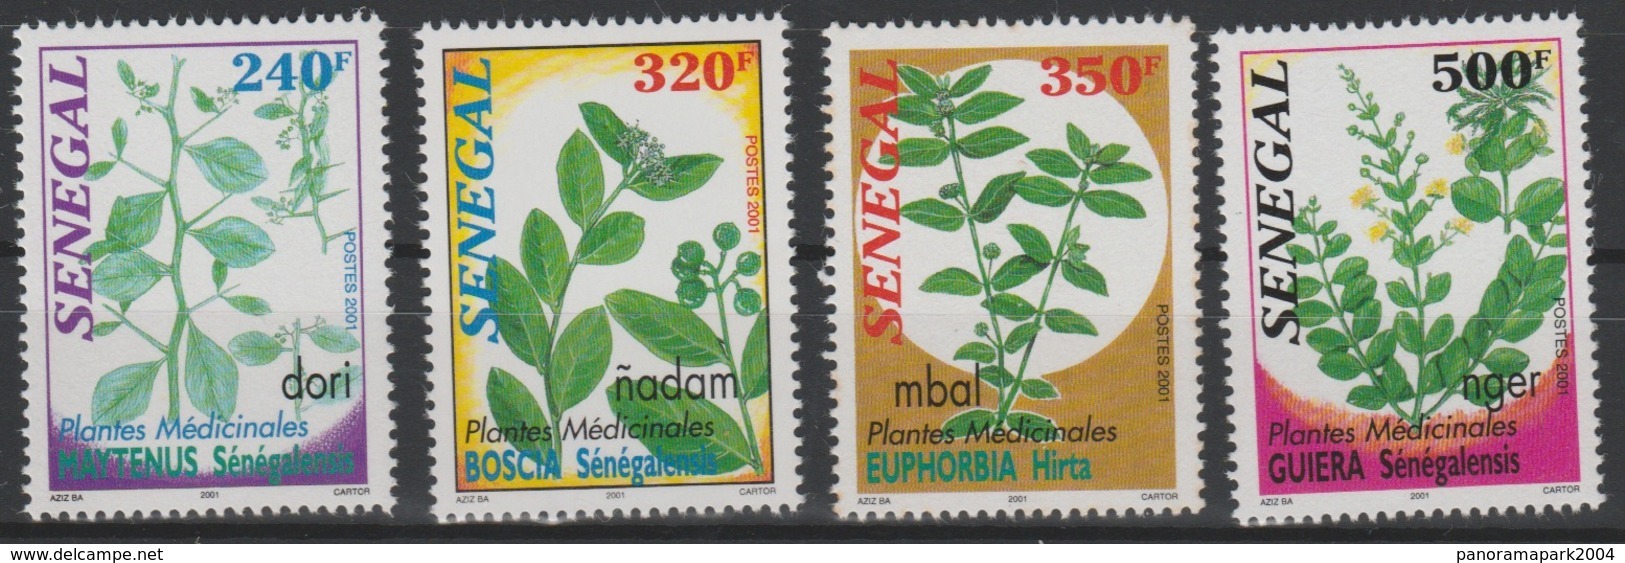 Sénégal 2001 Mi. 1934 - 1937 Plantes Médicinales Medical Plants Heilpflanzen Flore Flora - Plantes Médicinales